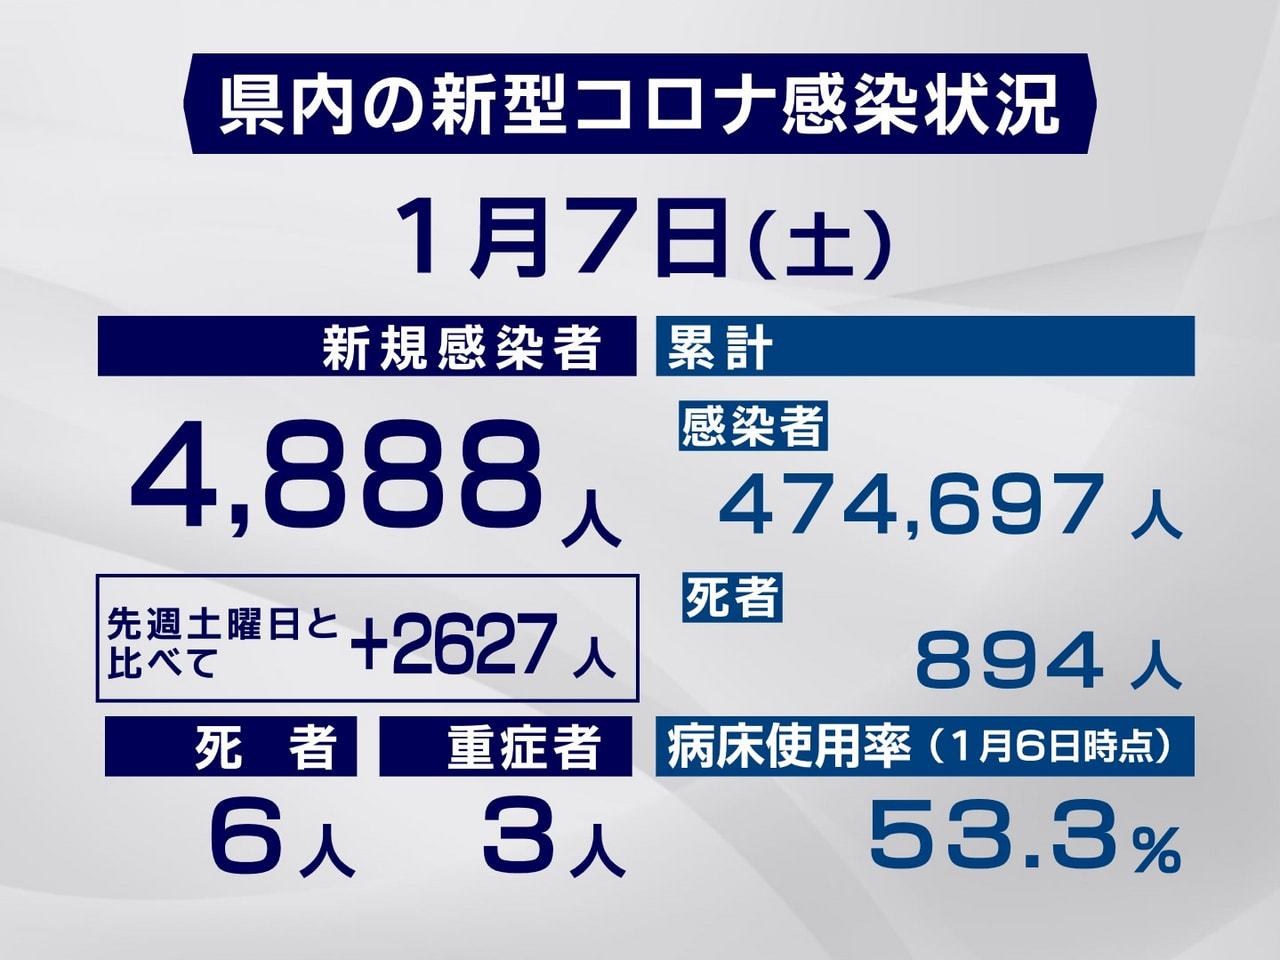 岐阜県と岐阜市は７日、新型コロナウイルスの感染者が新たに４８８８人、また、６人の...